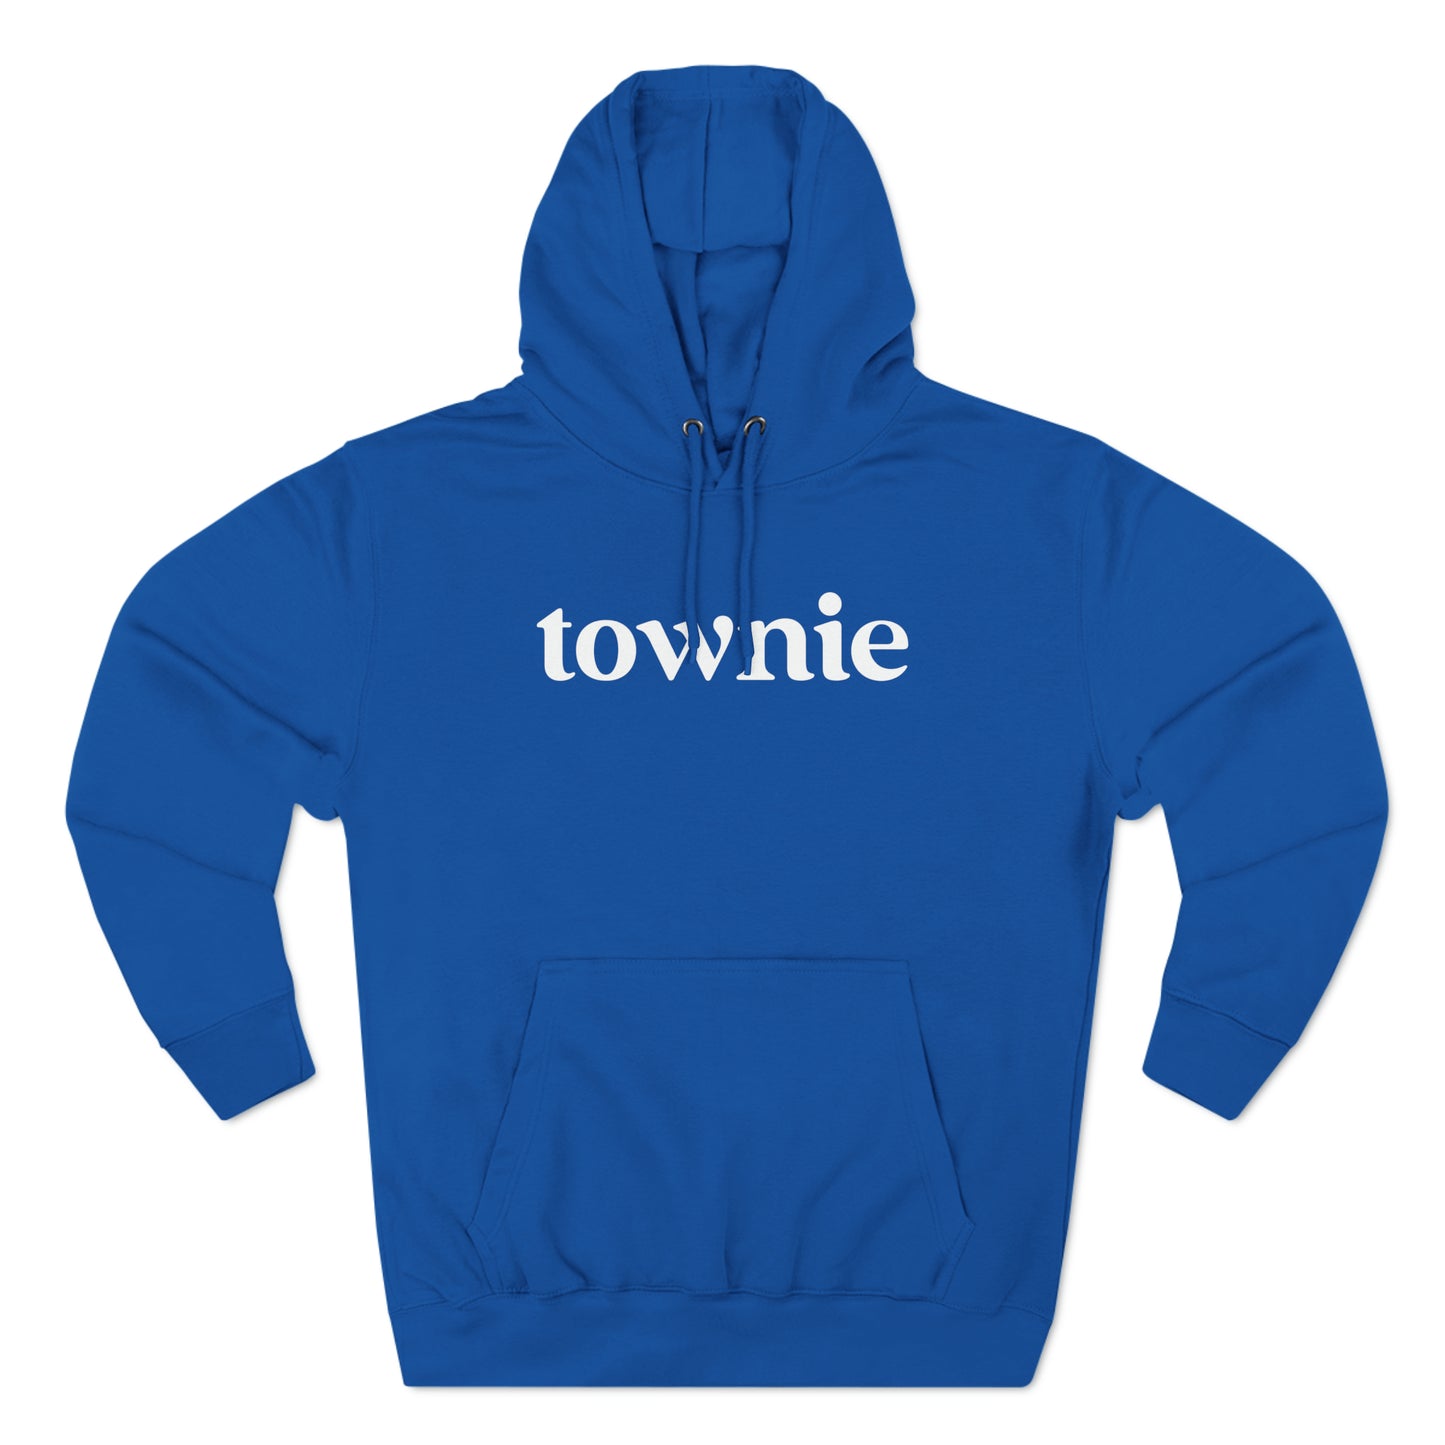 Townie